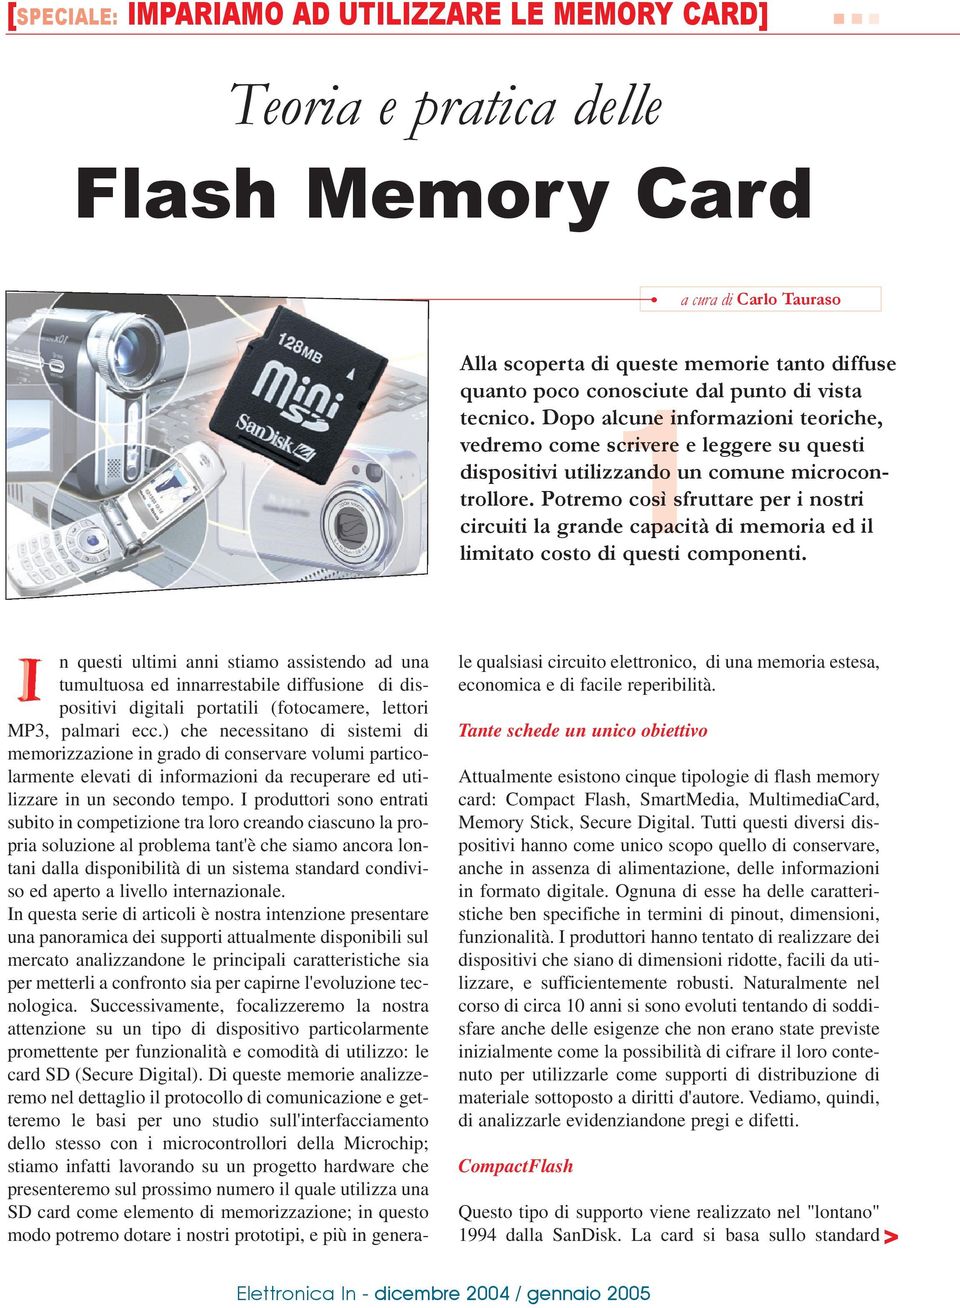 Potremo così sfruttare per i nostri circuiti la grande capacità di memoria ed il limitato costo di questi componenti.